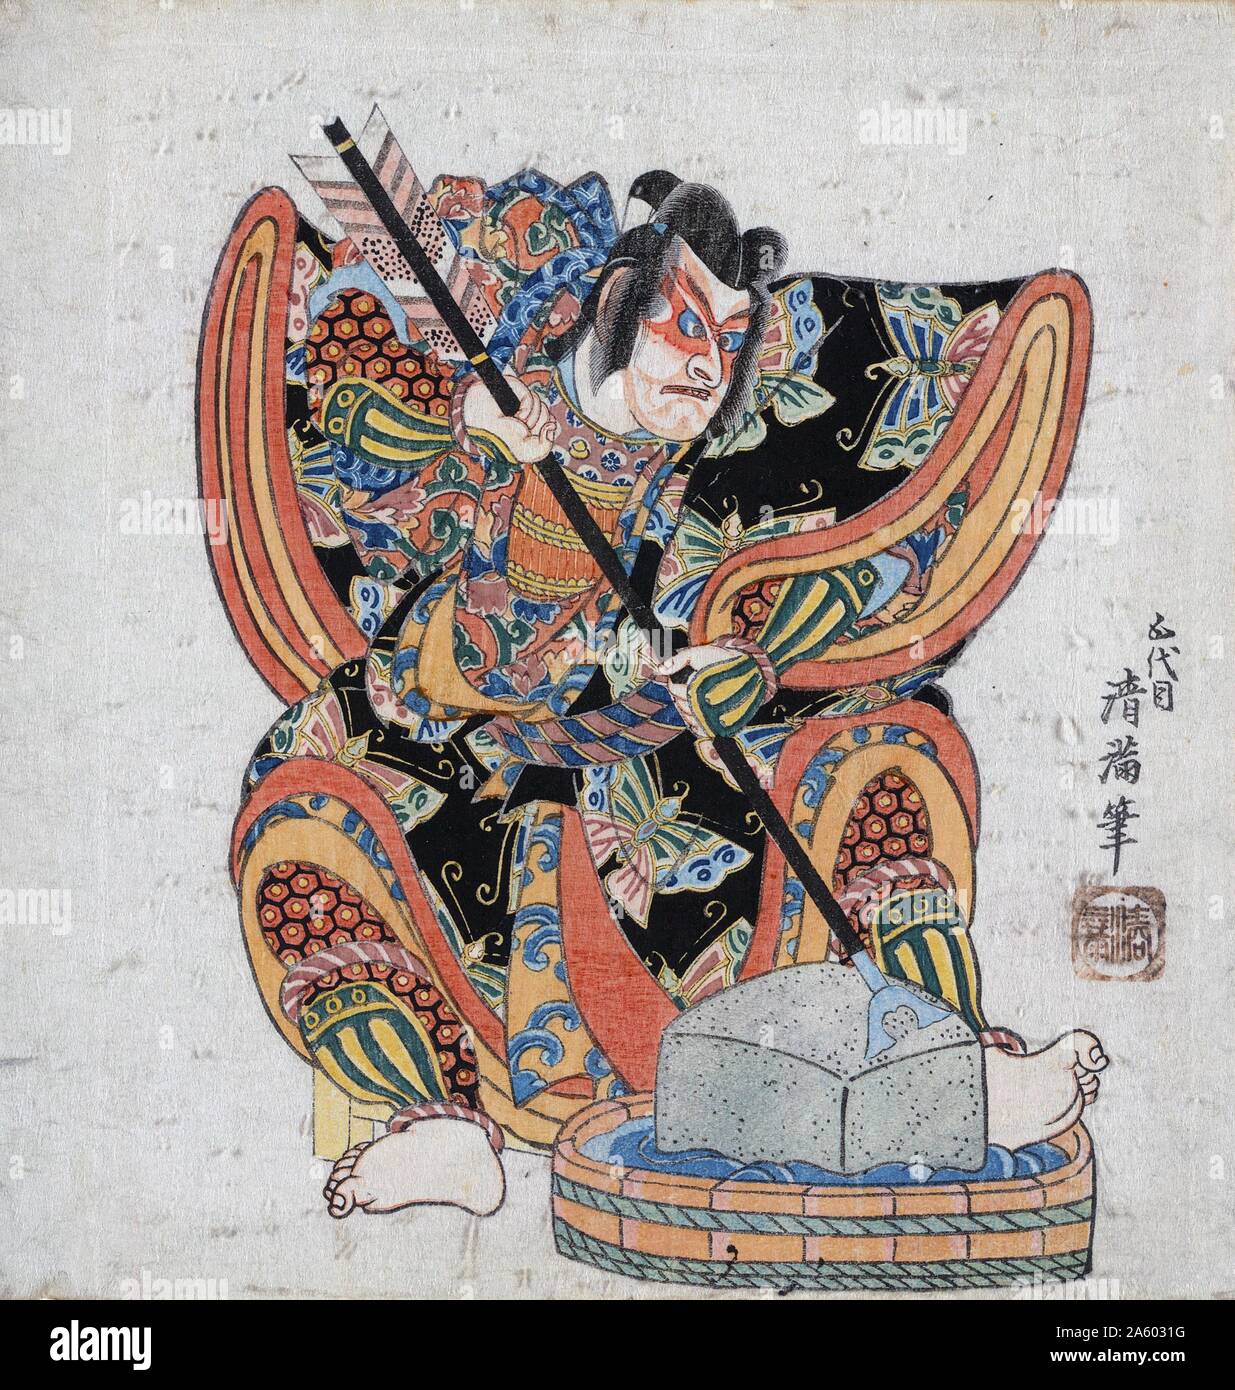 Japanische Print von Yanone Goro. Ein unbenannter Schauspieler spielt der Samurai Sogo keine Goro in komödiantischen Kabuki spielen Yanone Goro (die Pfeilspitze). Der Charakter ist amüsant mit out-Größe Pfeil, schrille Kleidung und Double-entendres. Er ist seiner Pfeilspitze auf einem Schleifstein schärfen. Farbe, Holzschnitt von Kiyomitsu II, (1787-1868). Stockfoto